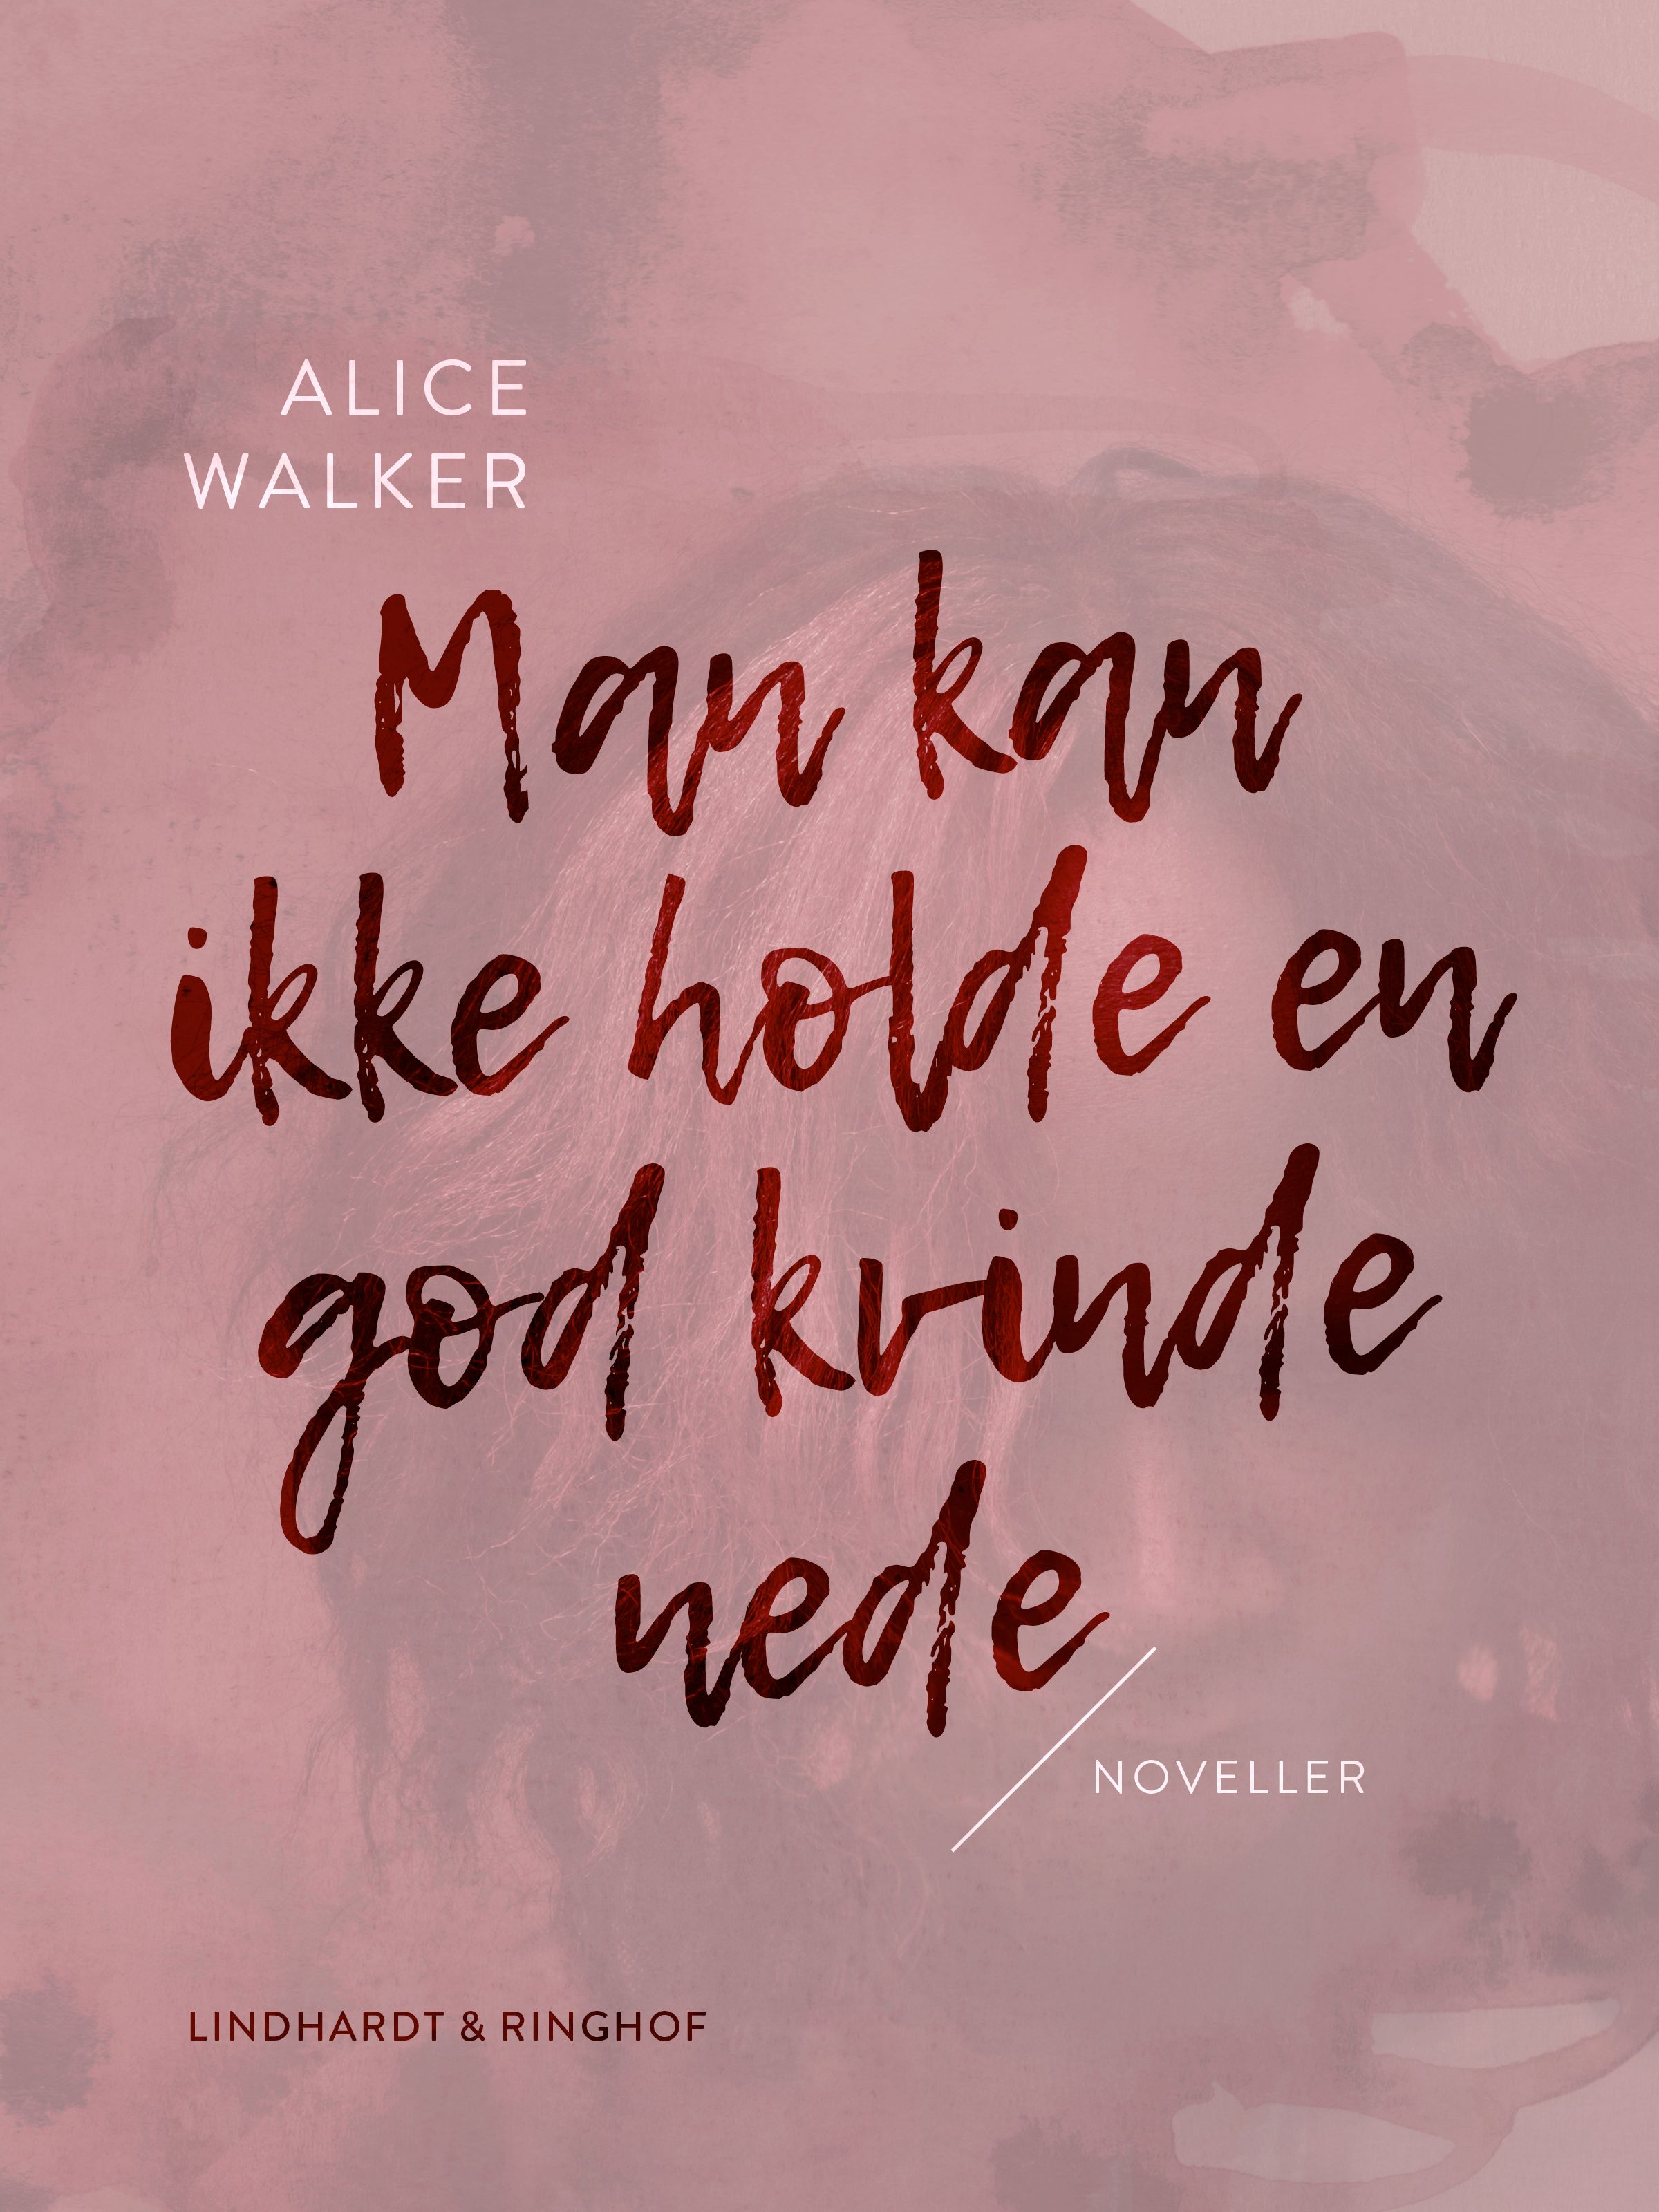 Man kan ikke holde en god kvinde nede, lydbog af Alice Walker